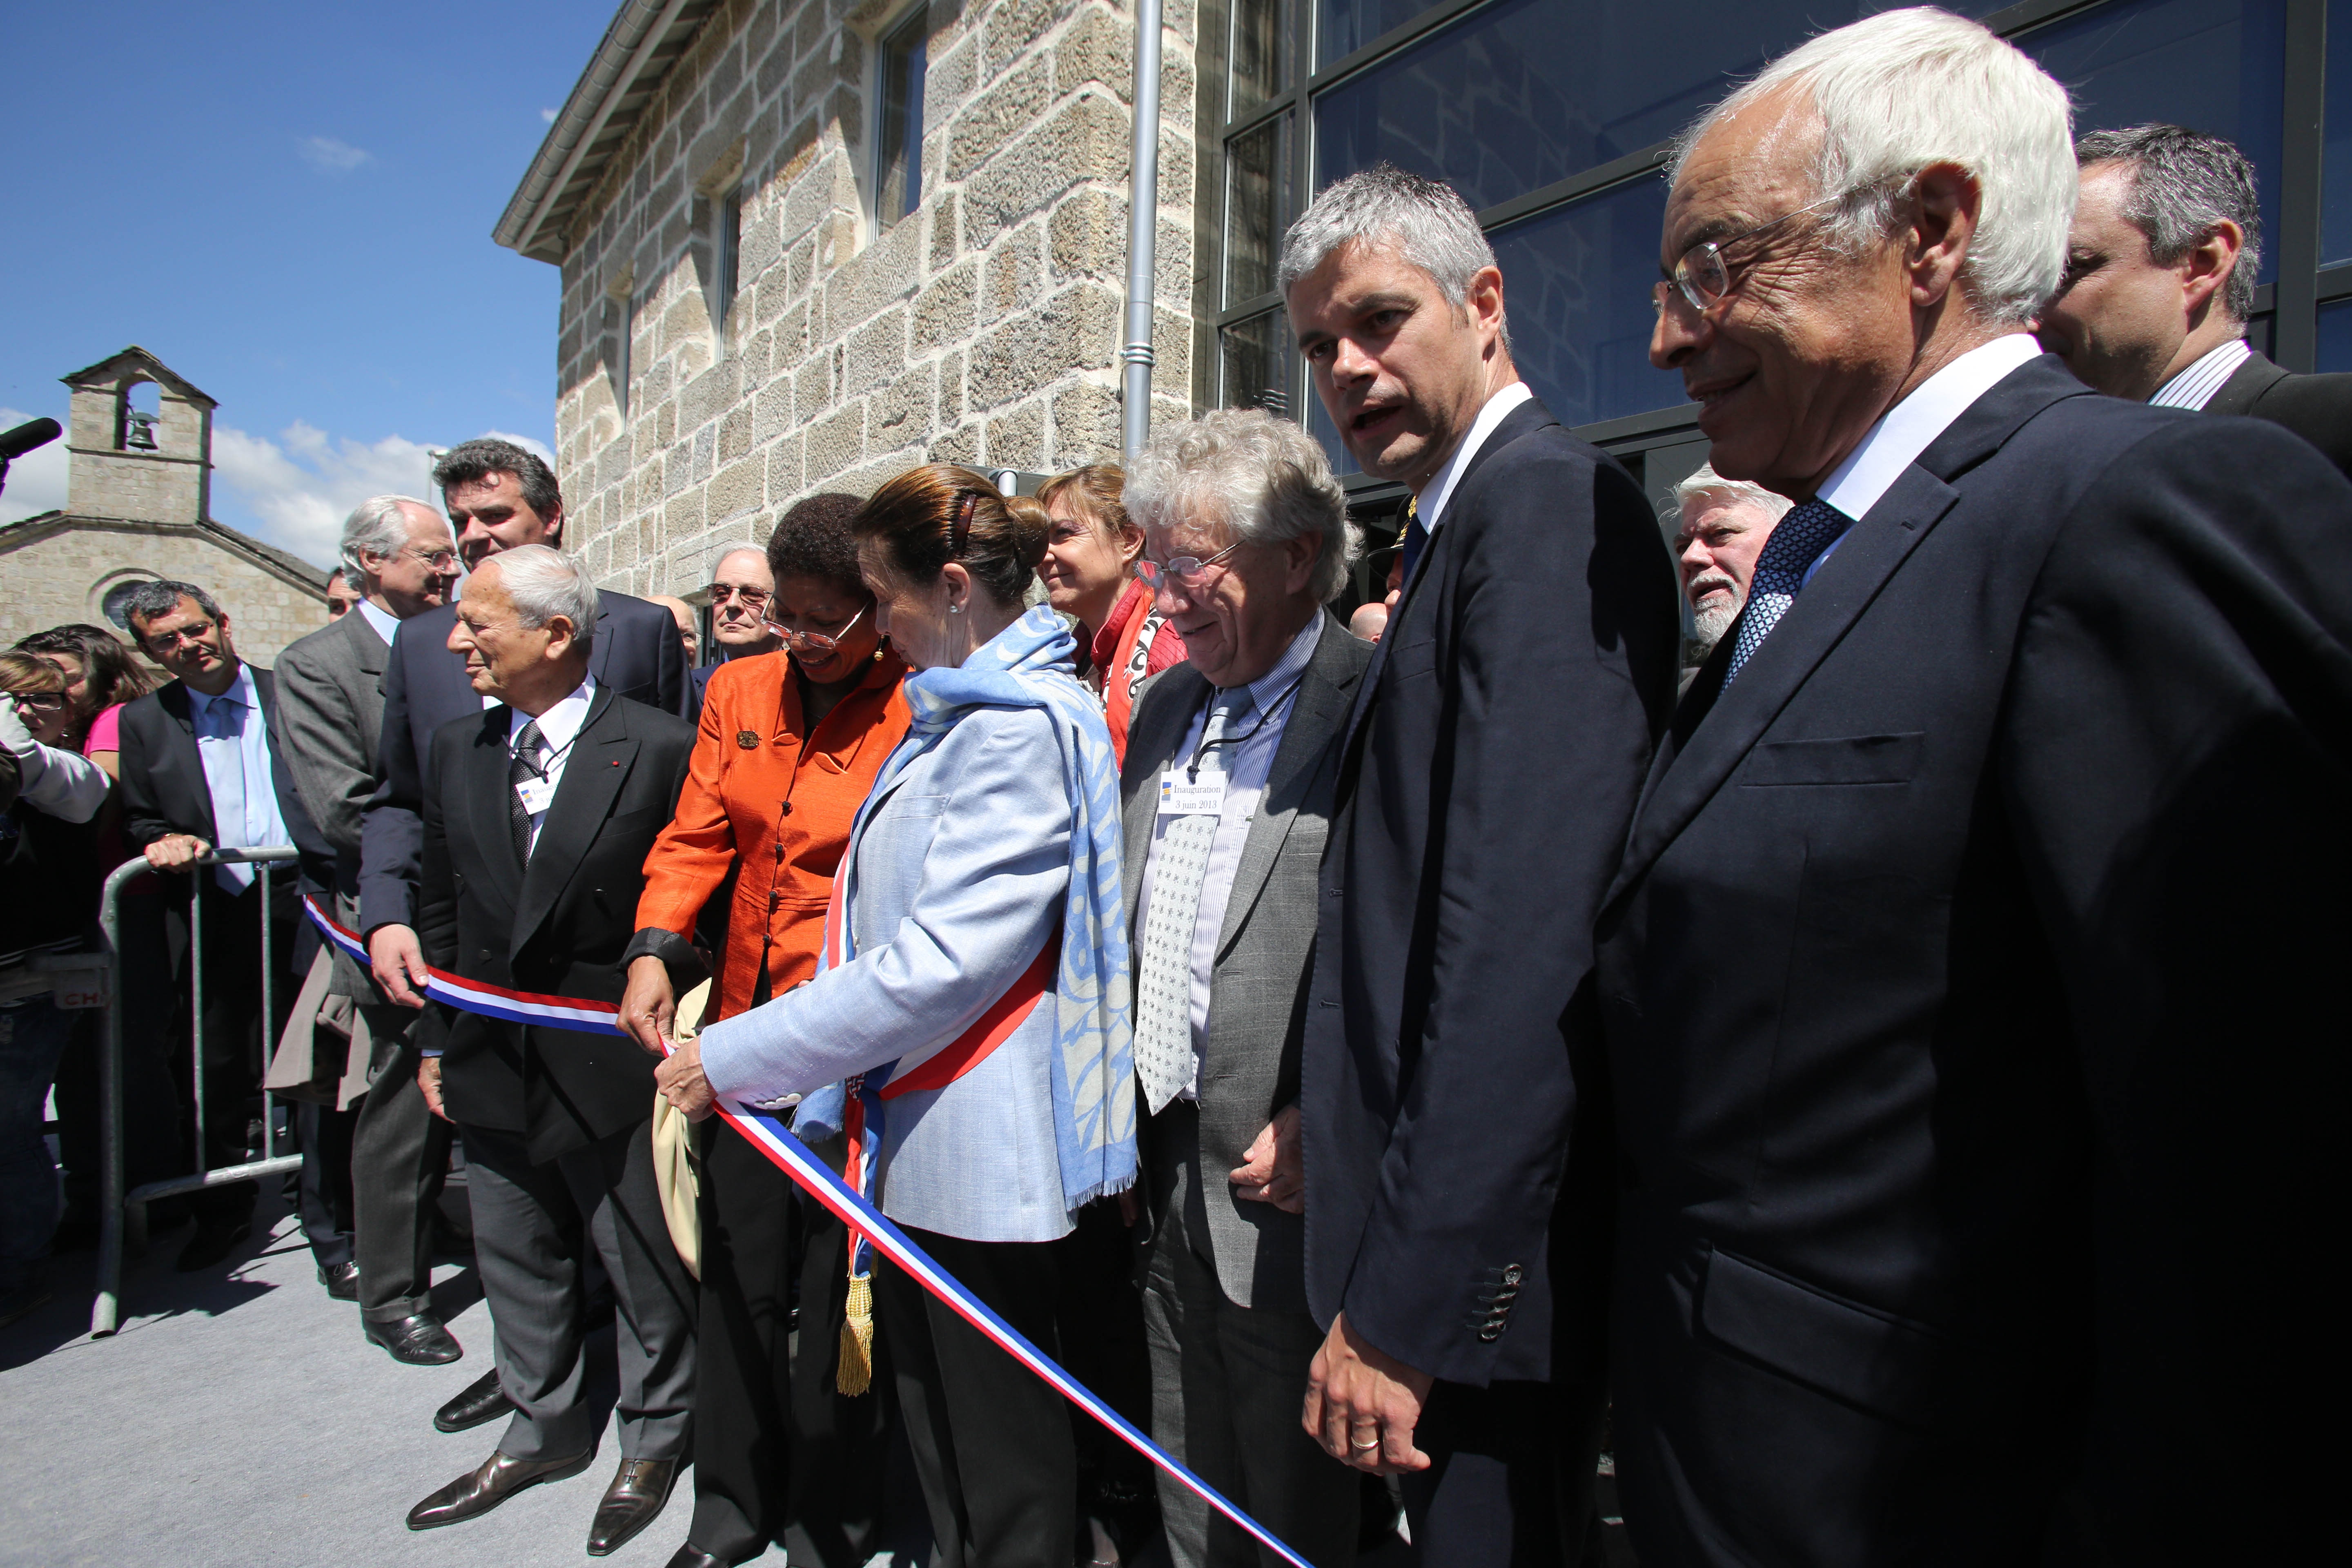 Mme Wauquiez, maire du Chambon-sur-Lignon, inaugurant le nouveau site, 3 juin 2013, crédit photo Jean-Marc Demars